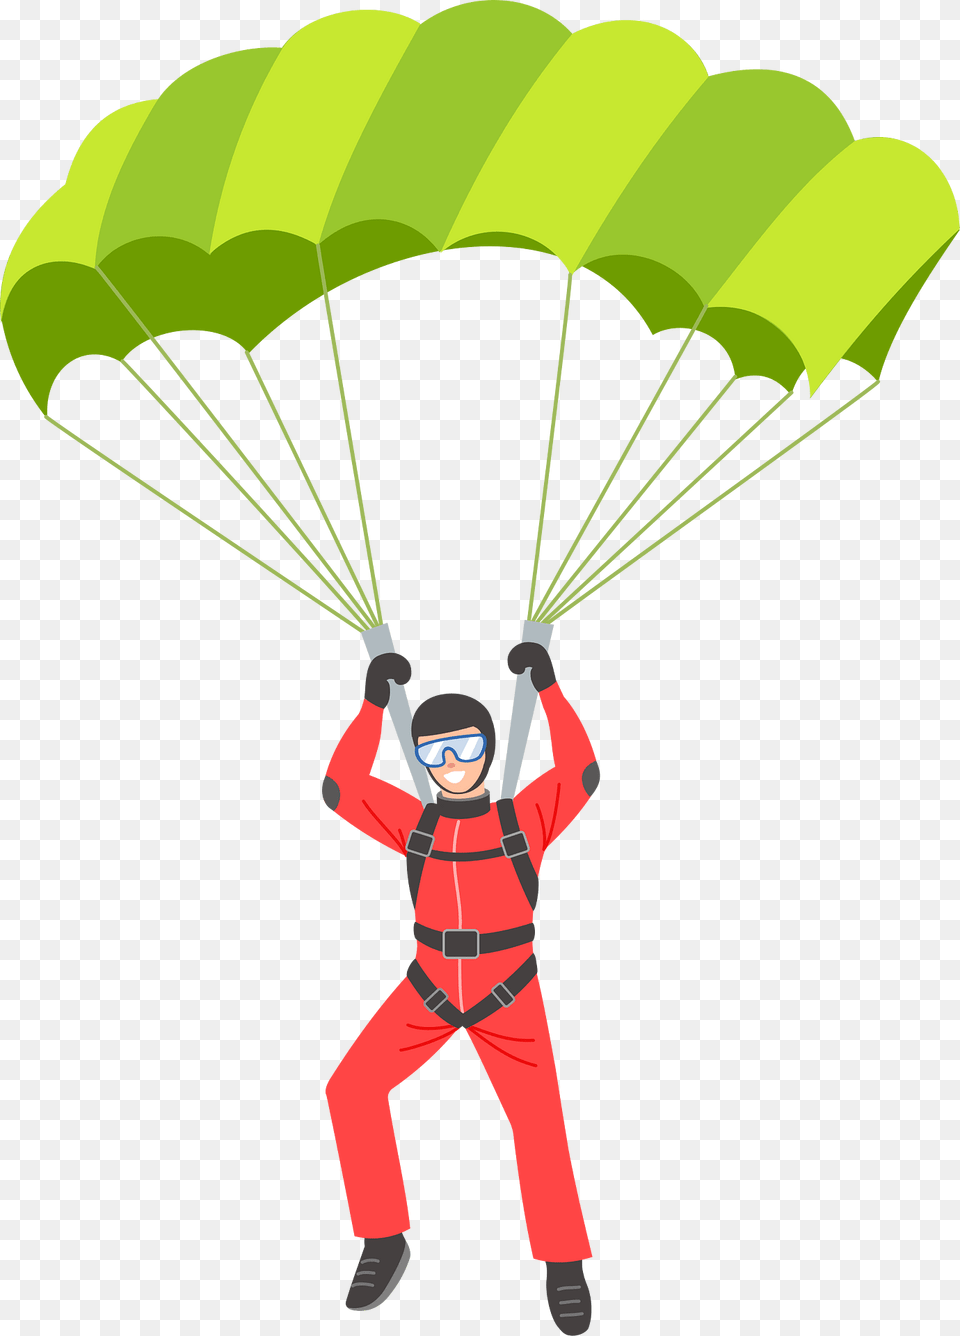 Parachutist Clipart, Parachute, Clothing, Lifejacket, Person Png